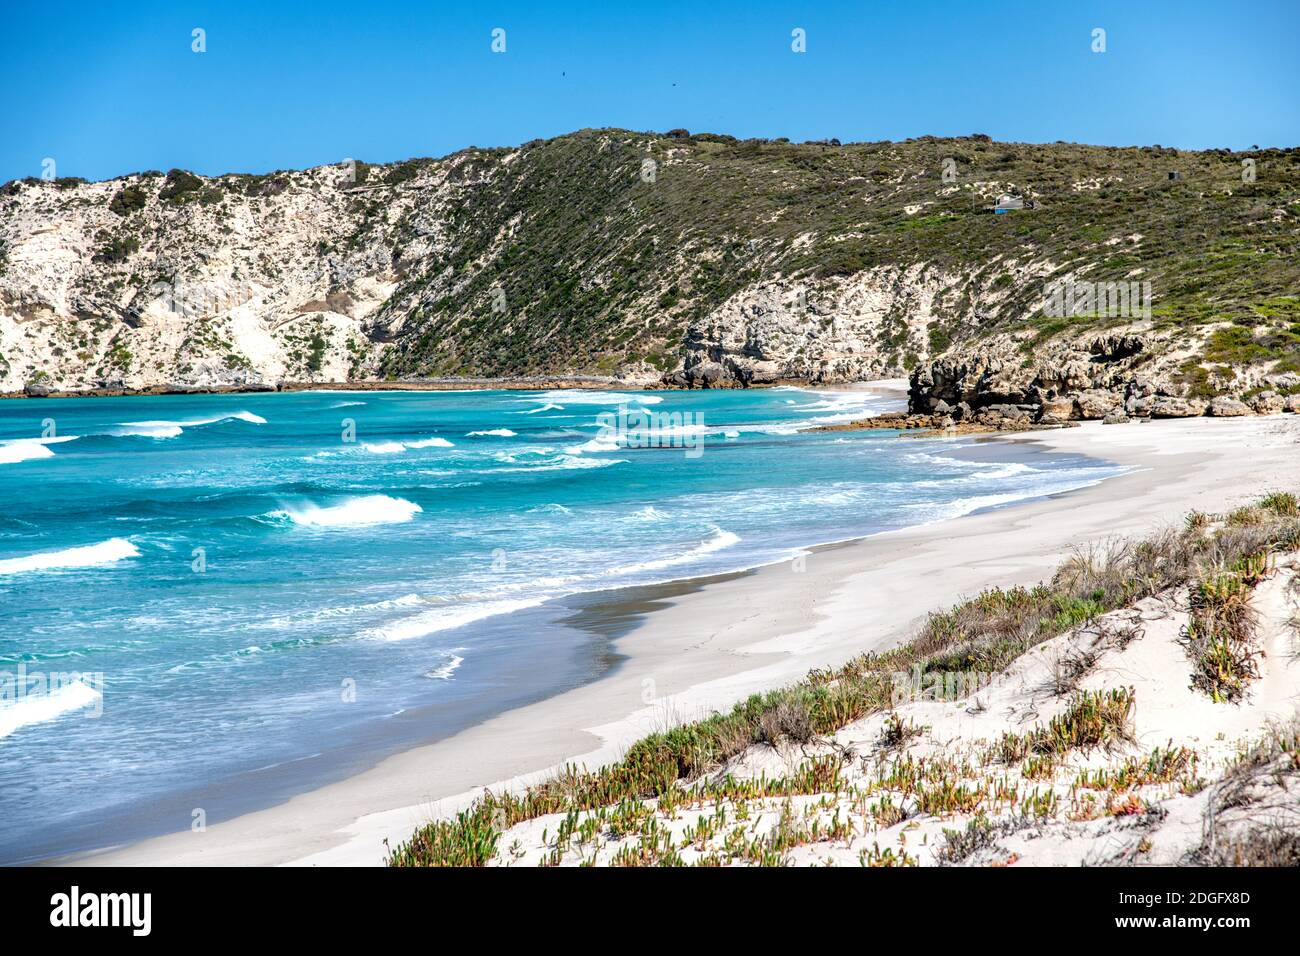 Pennington Bay Beach in Kangaroo Island, Australia Stock Photo